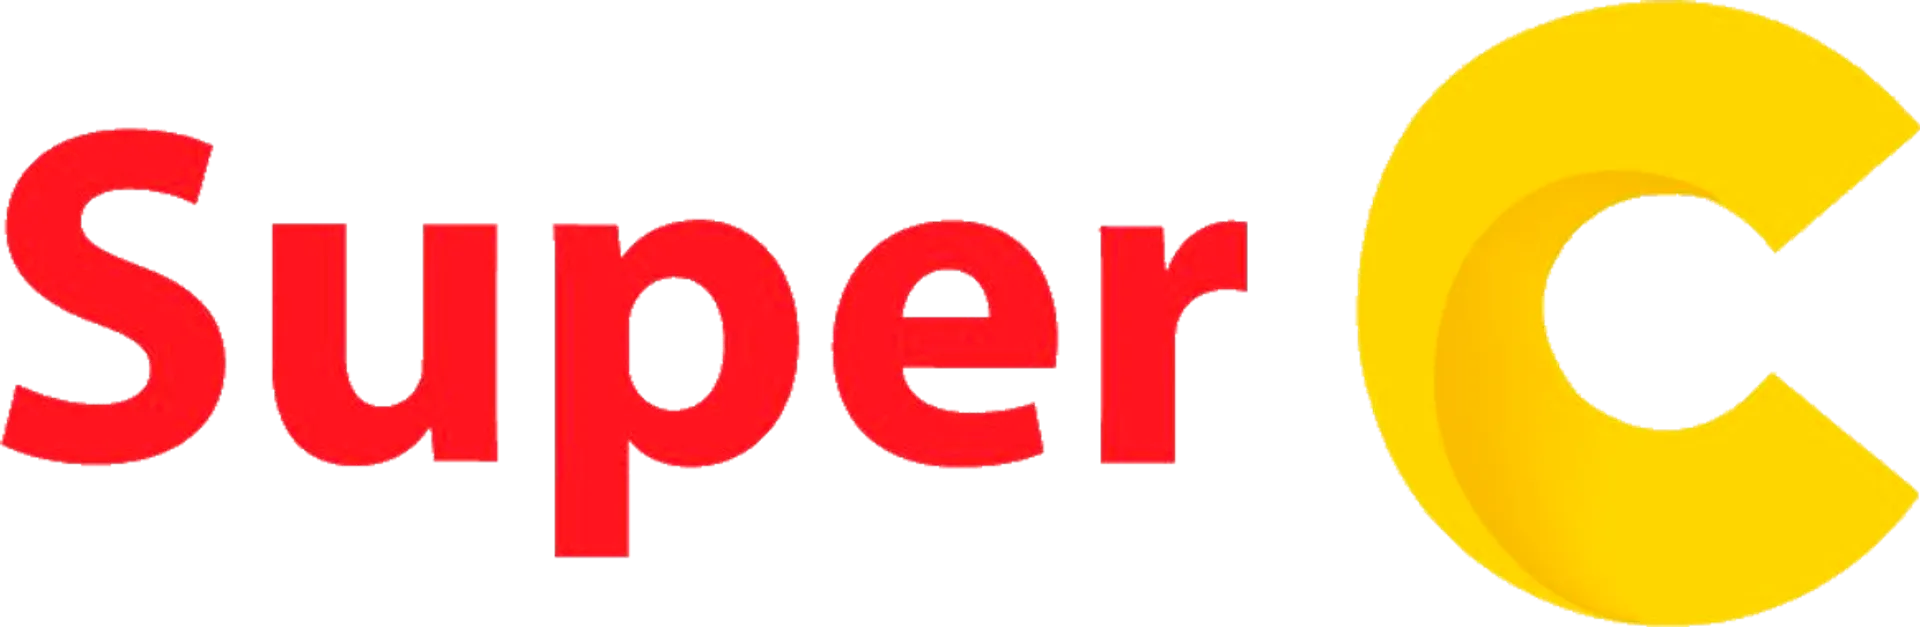 SUPER C logo de circulaires